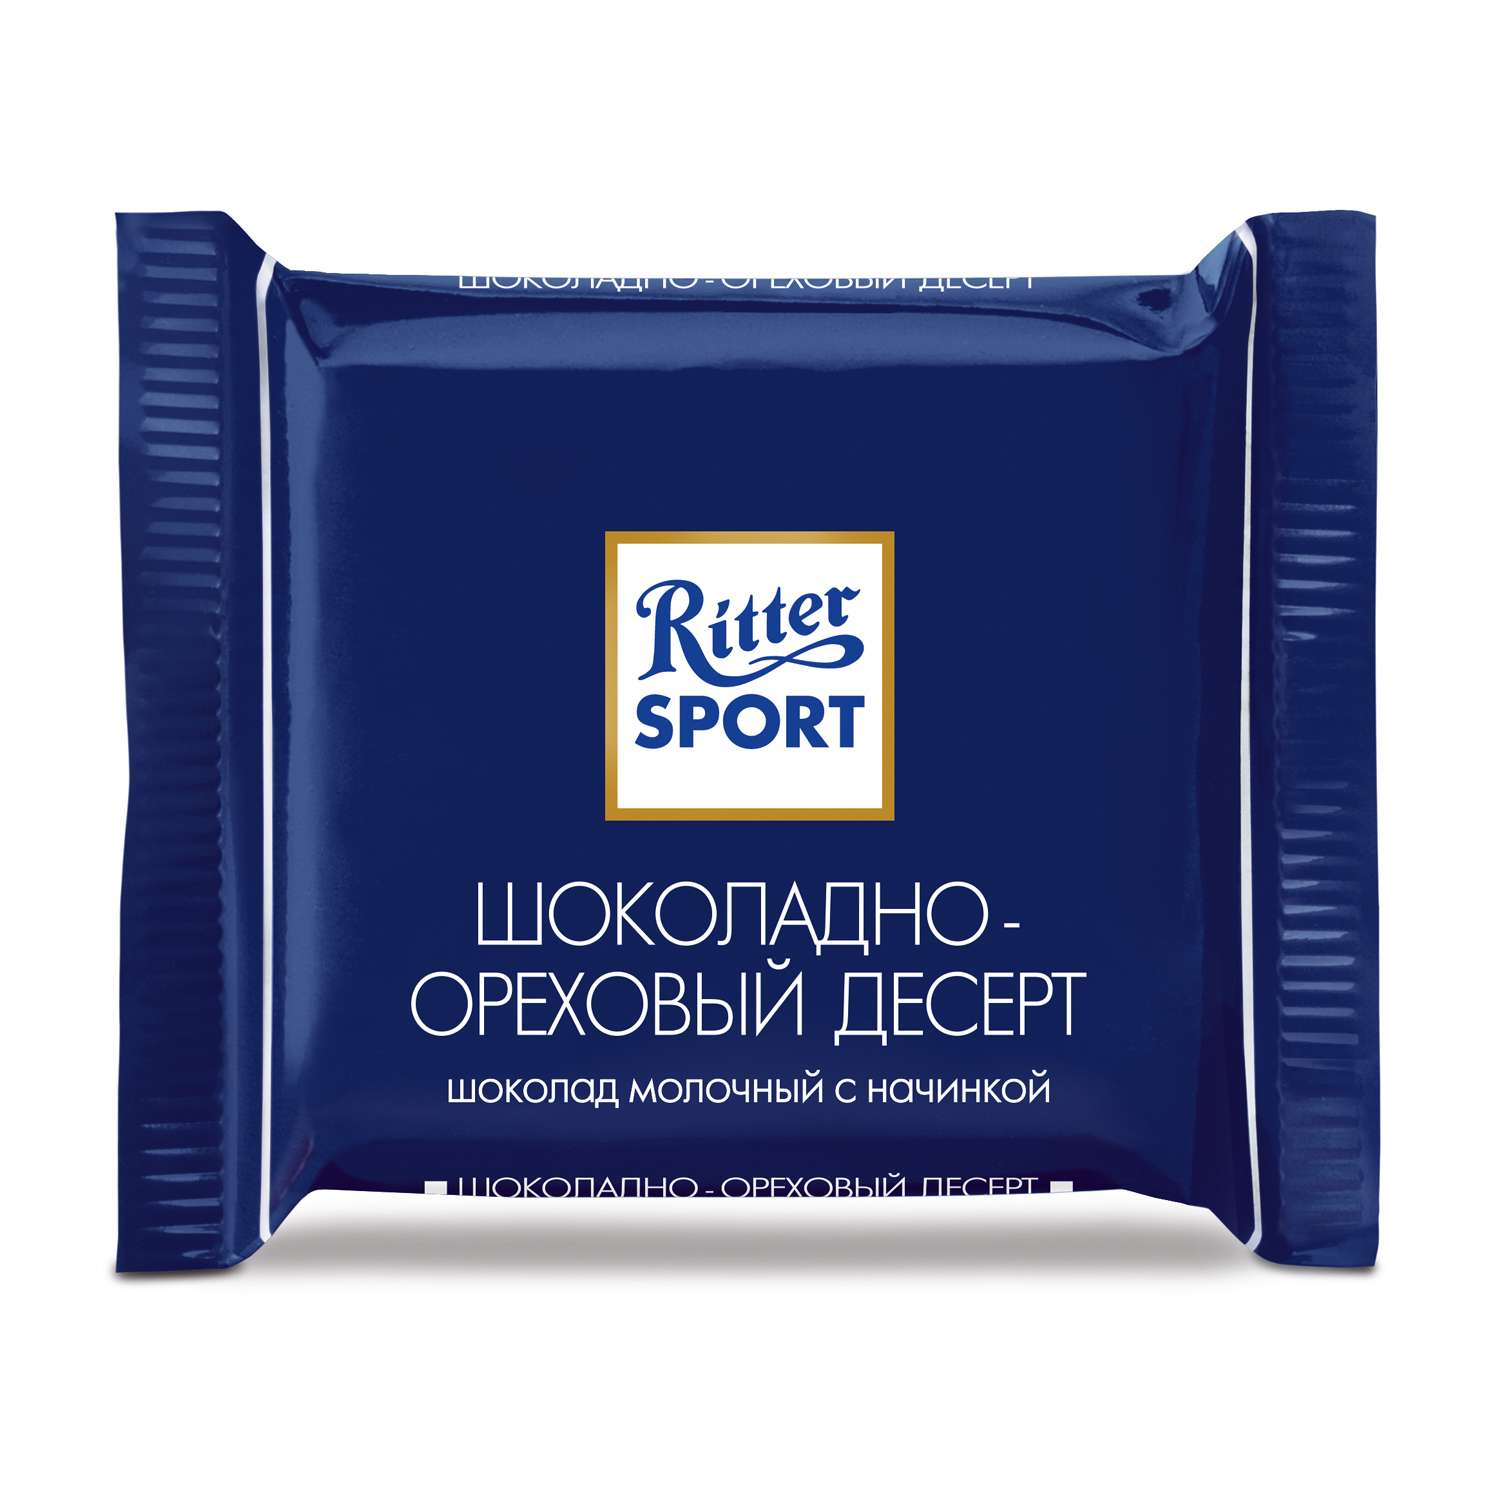 Шоколад Ritter Sport мини 7 вкусов 150г - фото 7